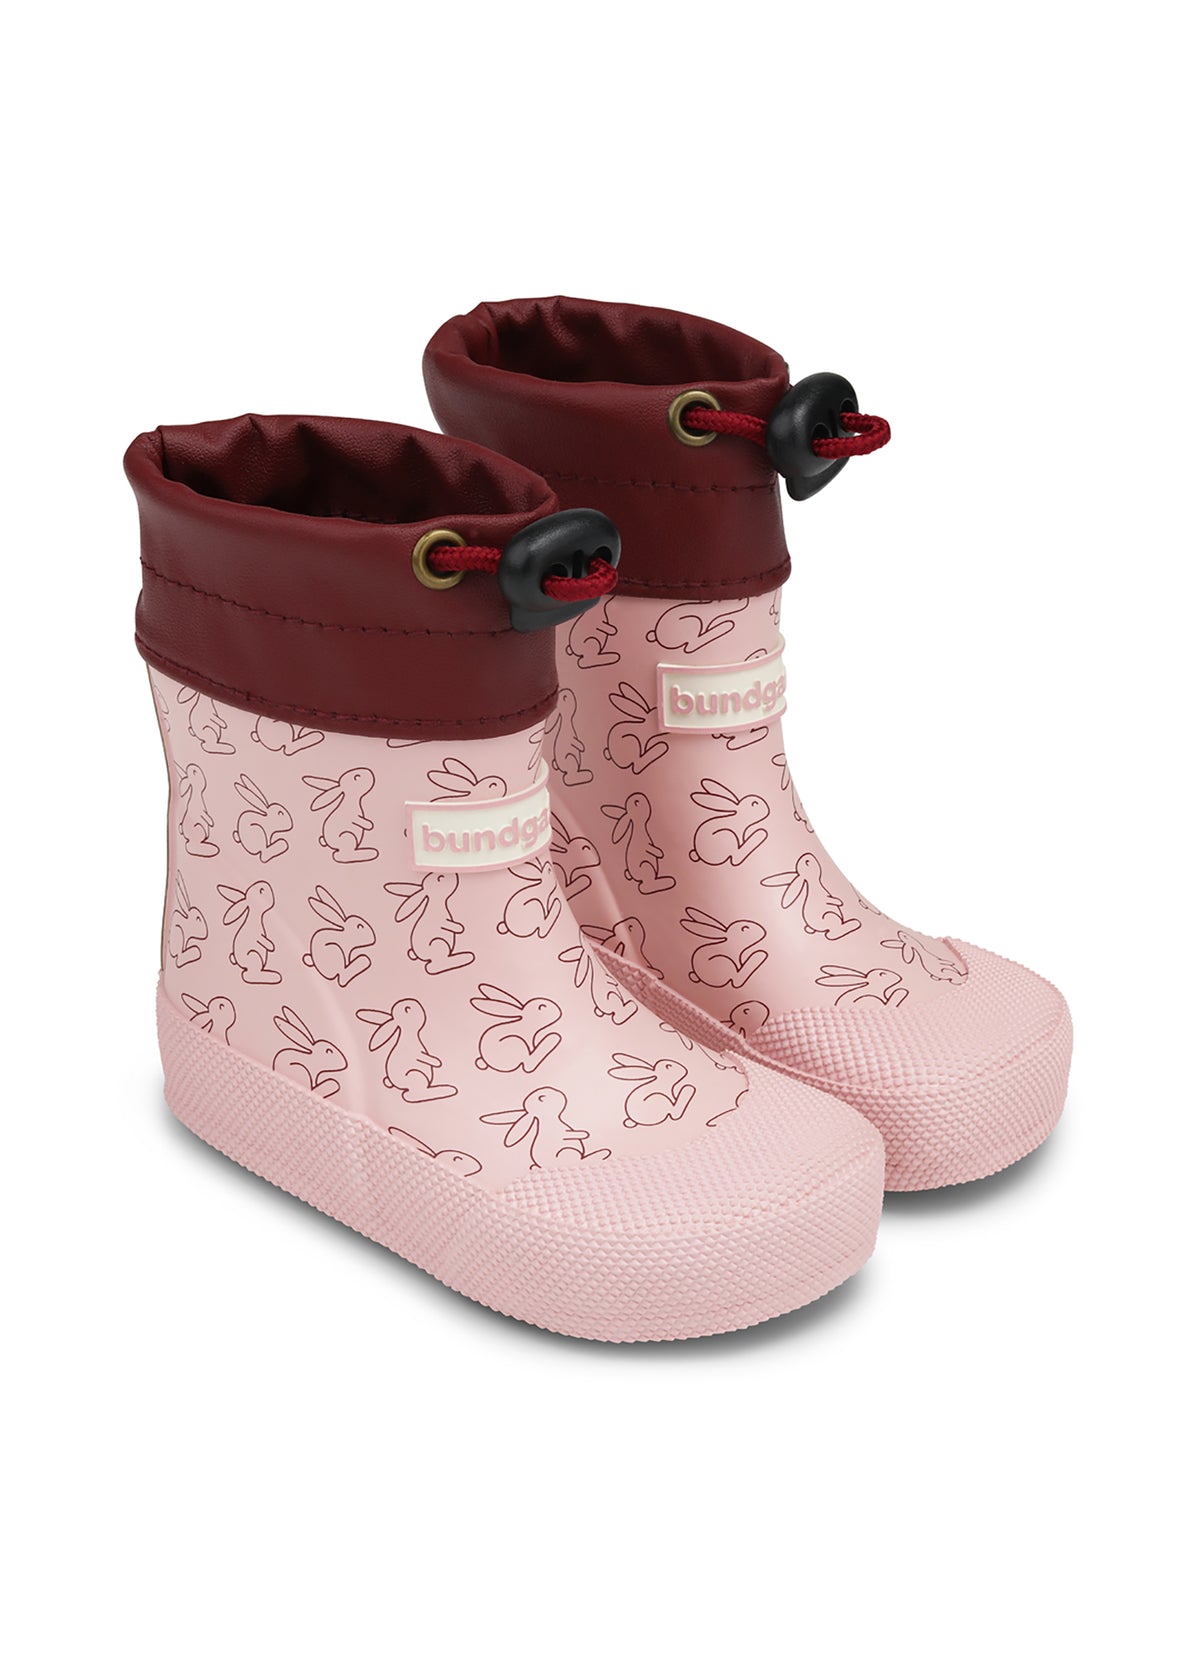 Rubber boots for toddlers - Cover, Rose Rabbit, Bundgaard Zero Heel